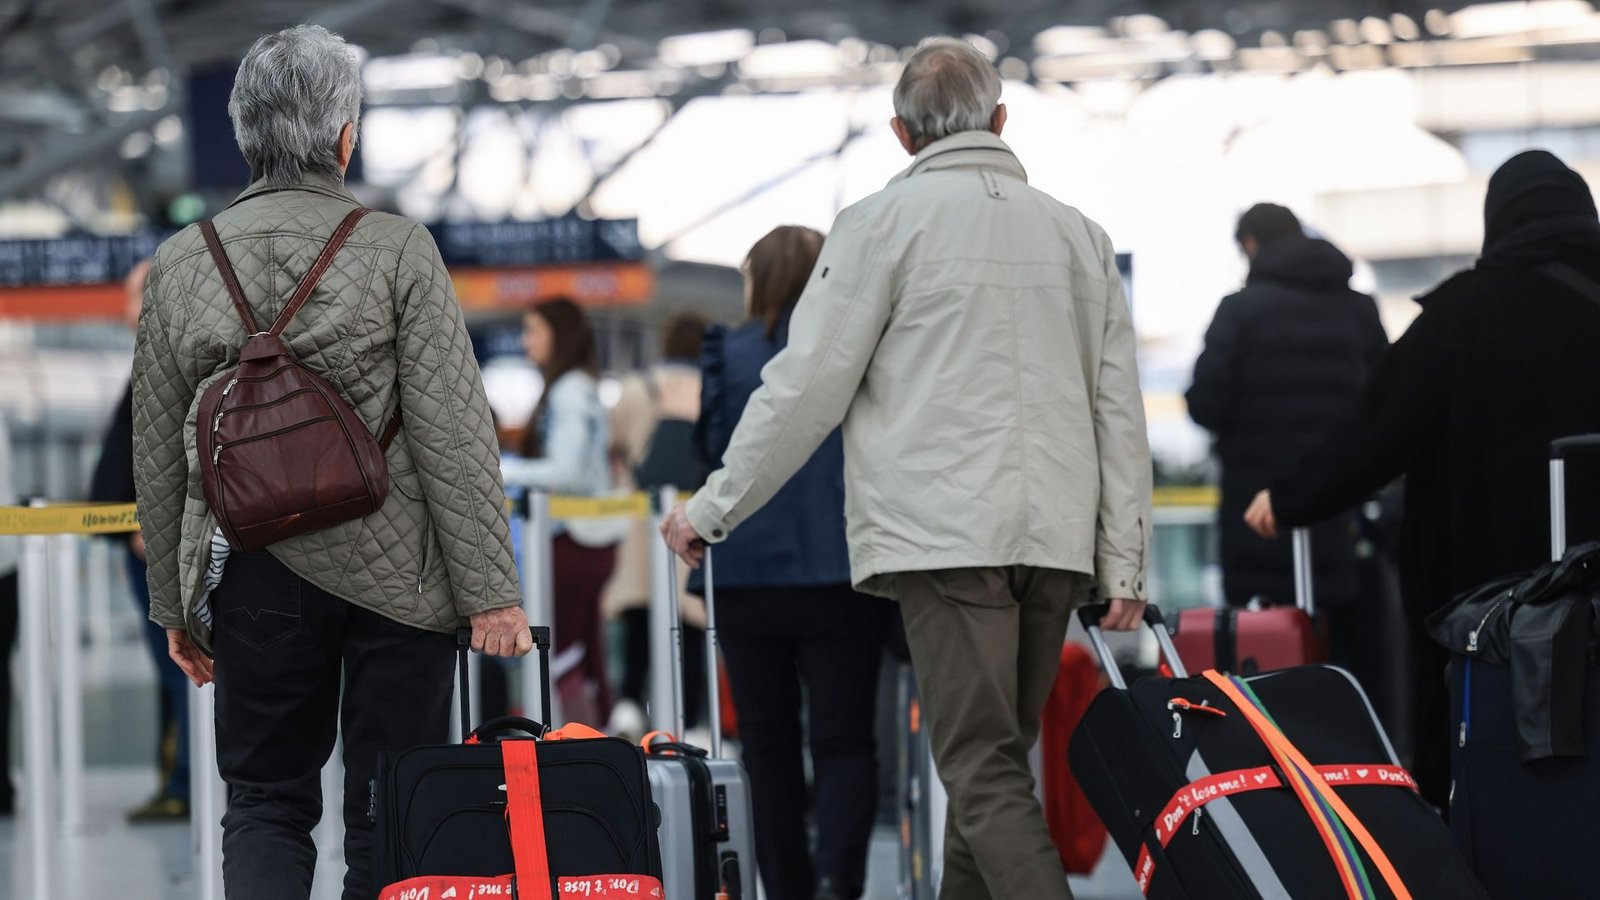 Mit der Alterung der Gesellschaft wächst der Anteil älterer Passagiere. Flughäfen müssen sich darauf einstellen.Foto: Oliver Berg/dpa